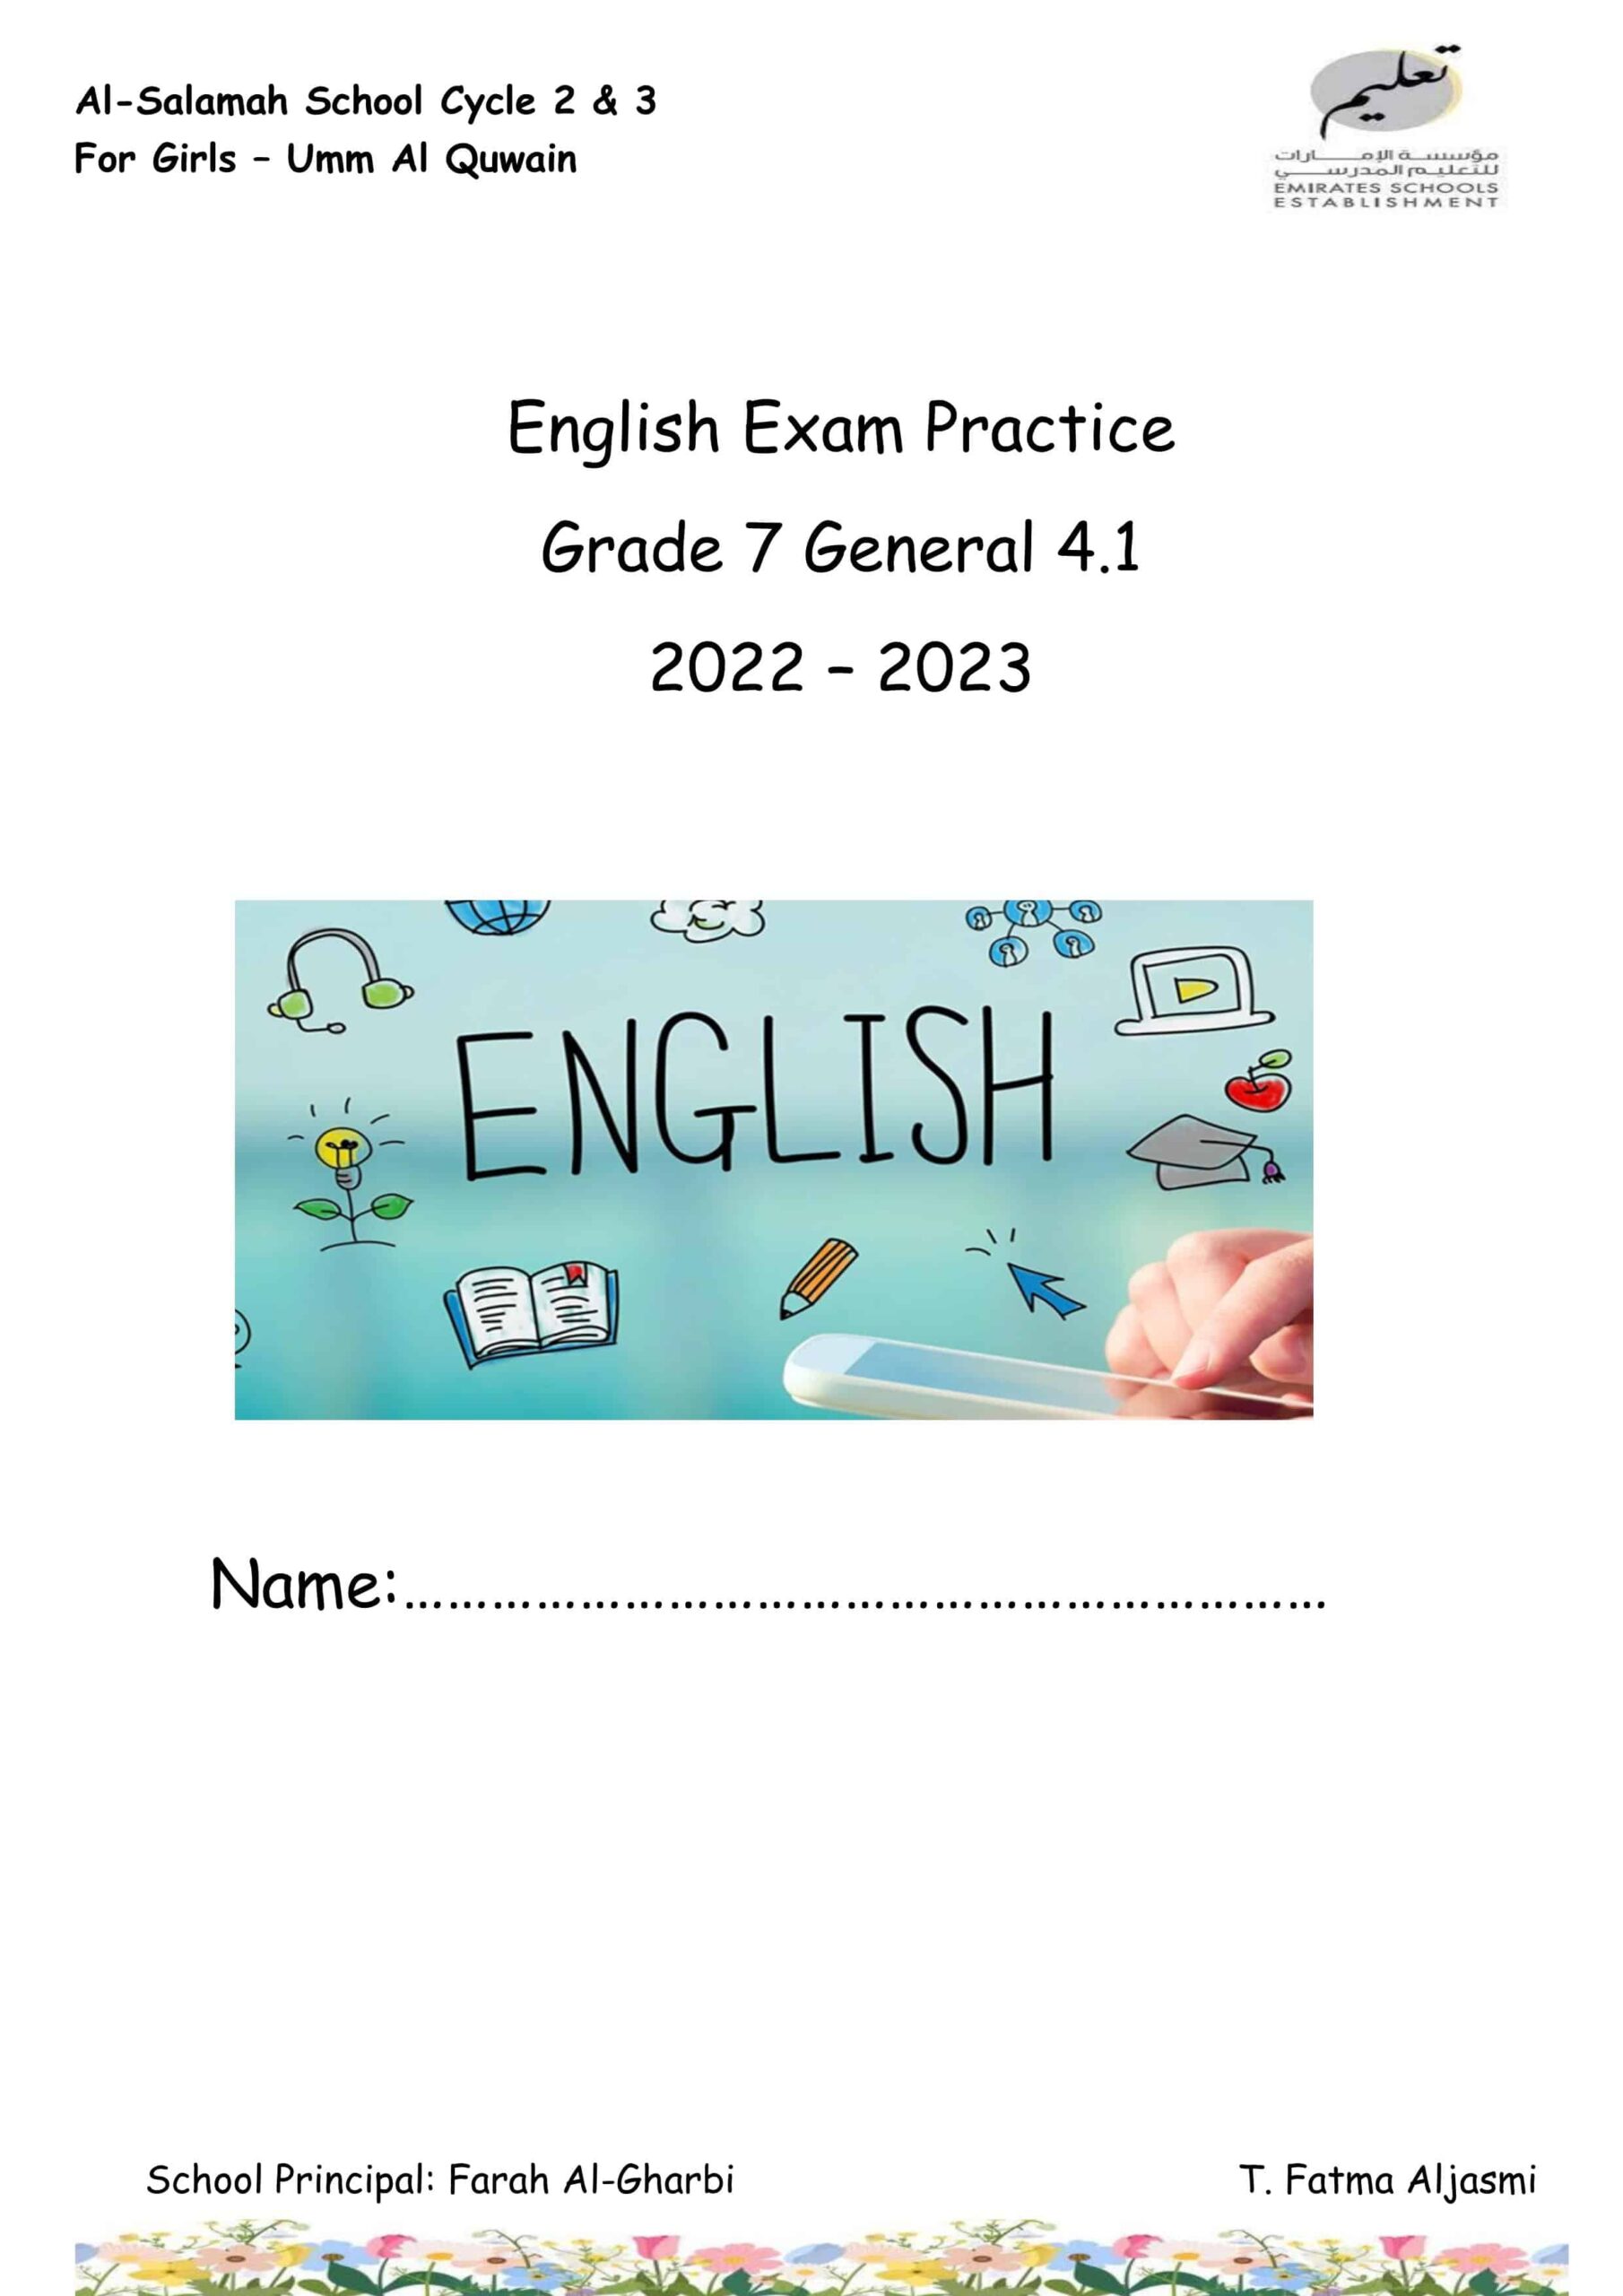 أوراق عمل Exam Practice اللغة الإنجليزية الصف السابع